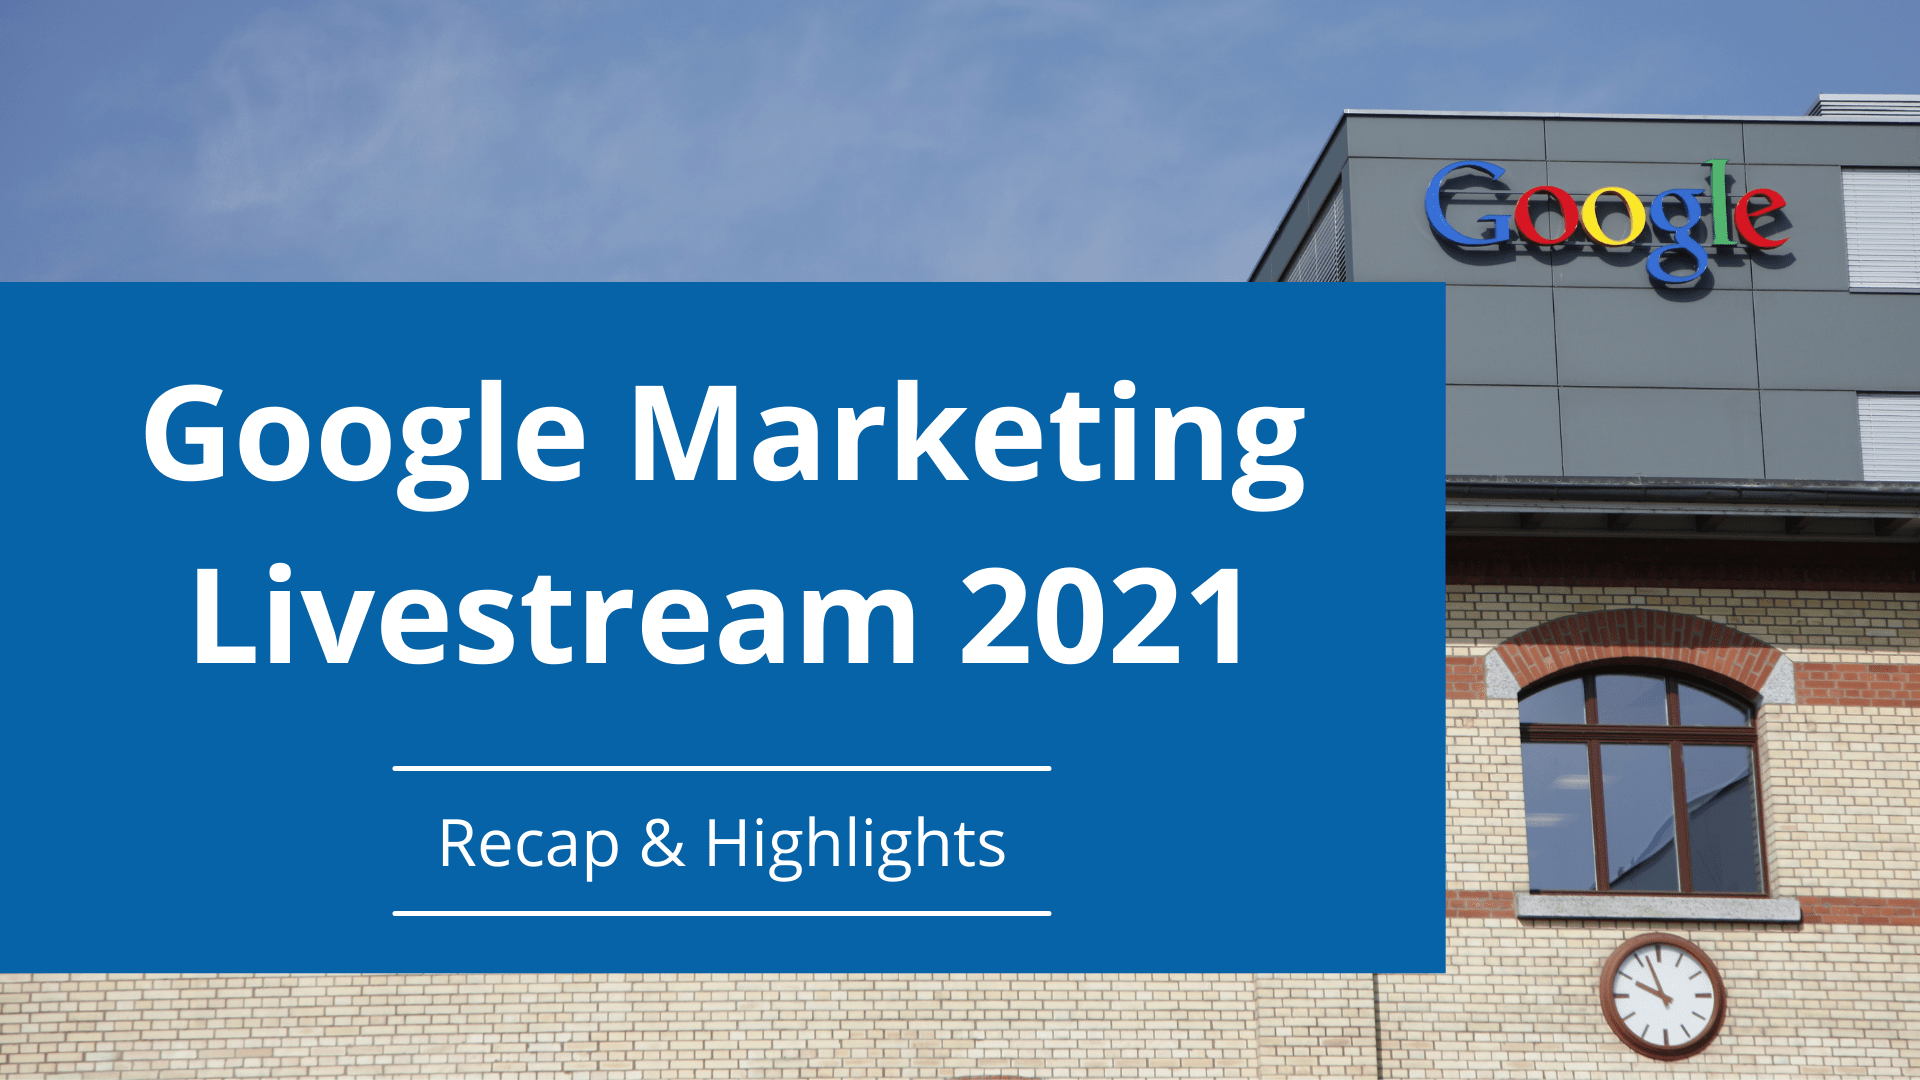 Google Marketing Livestream 2021 recap & highlights